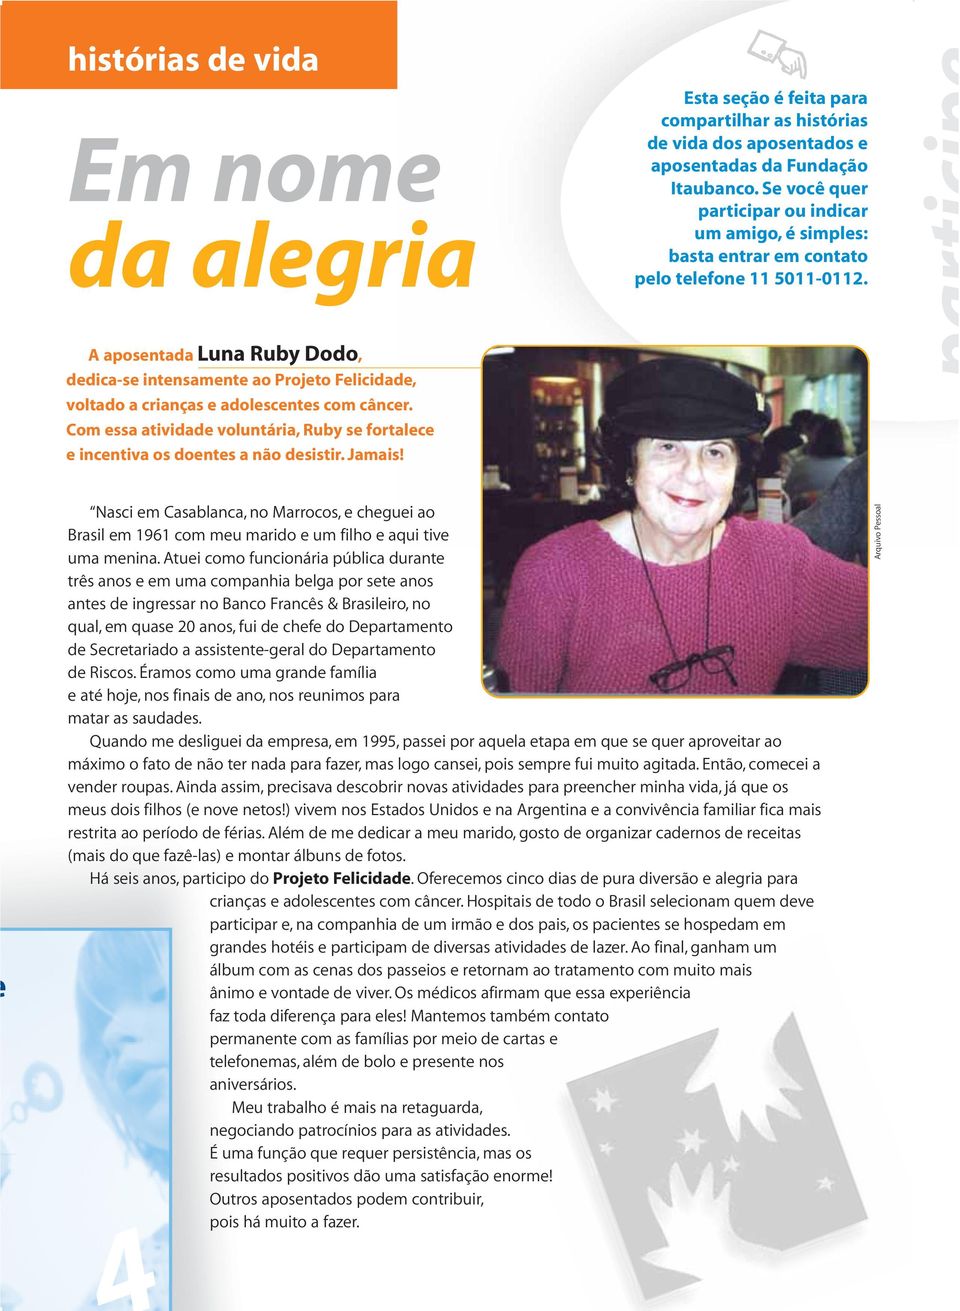 A aposentada Luna Ruby Dodo, dedica-se intensamente ao Projeto Felicidade, voltado a crianças e adolescentes com câncer.